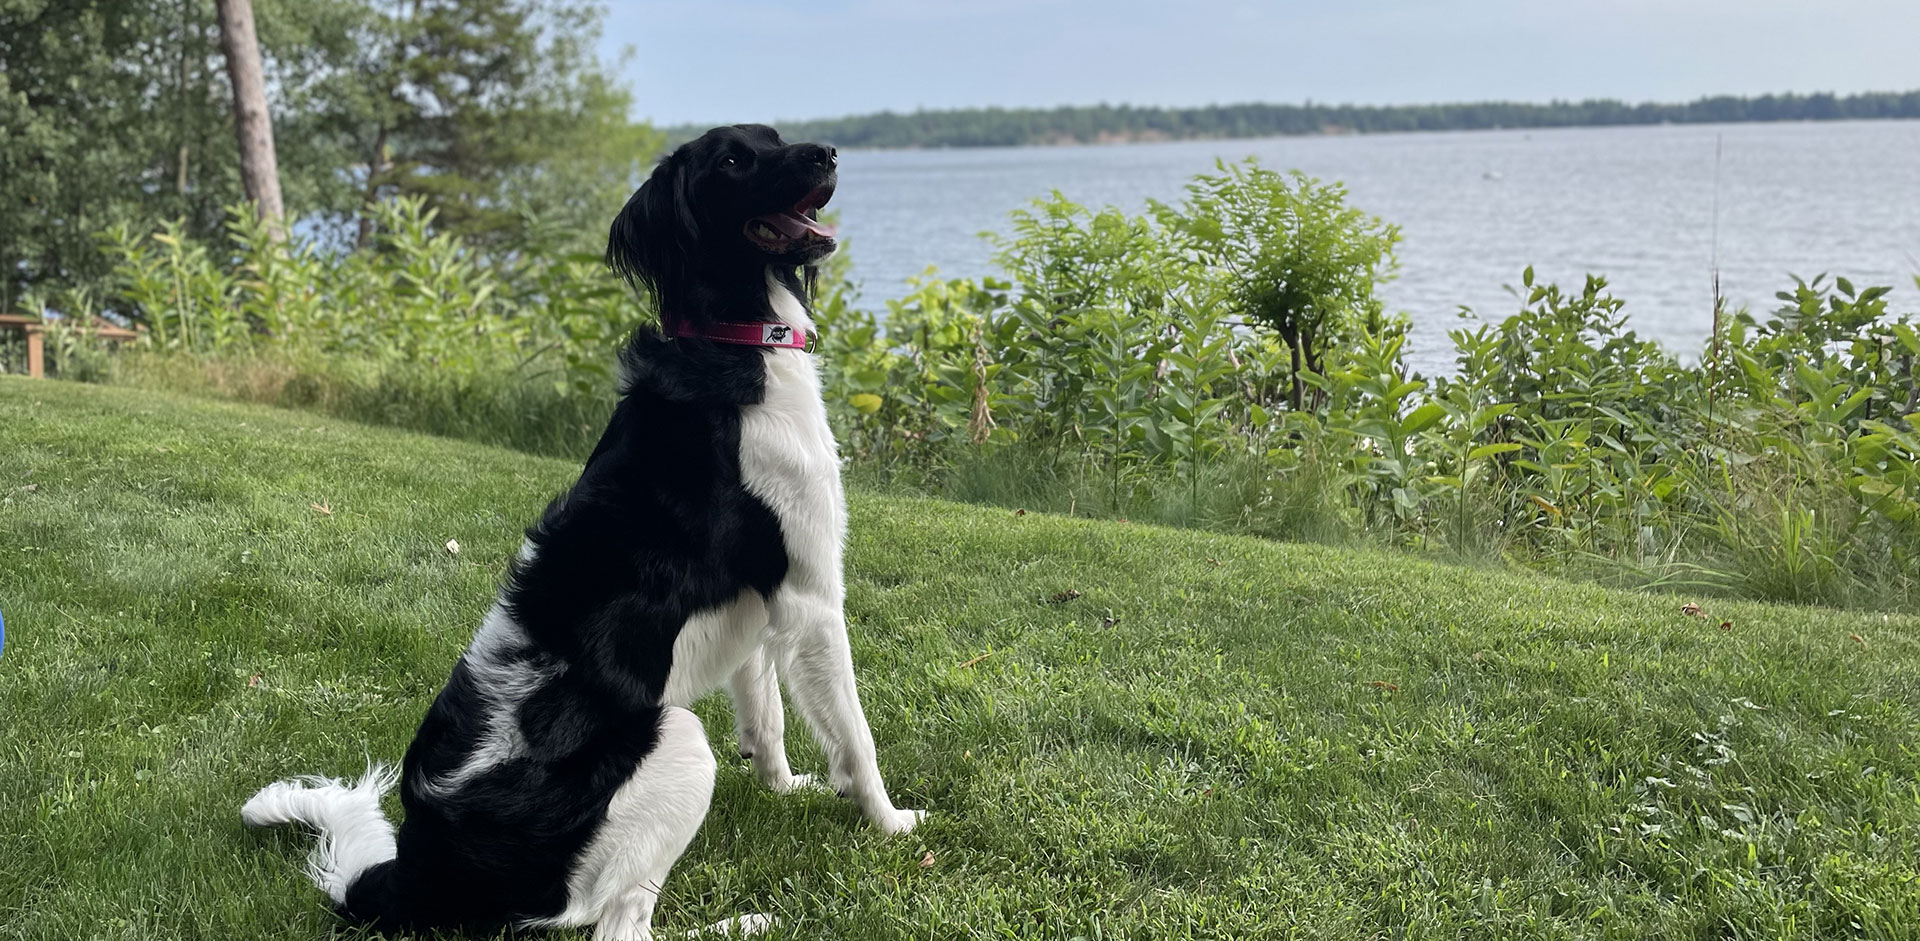 ROCT Dog by lake